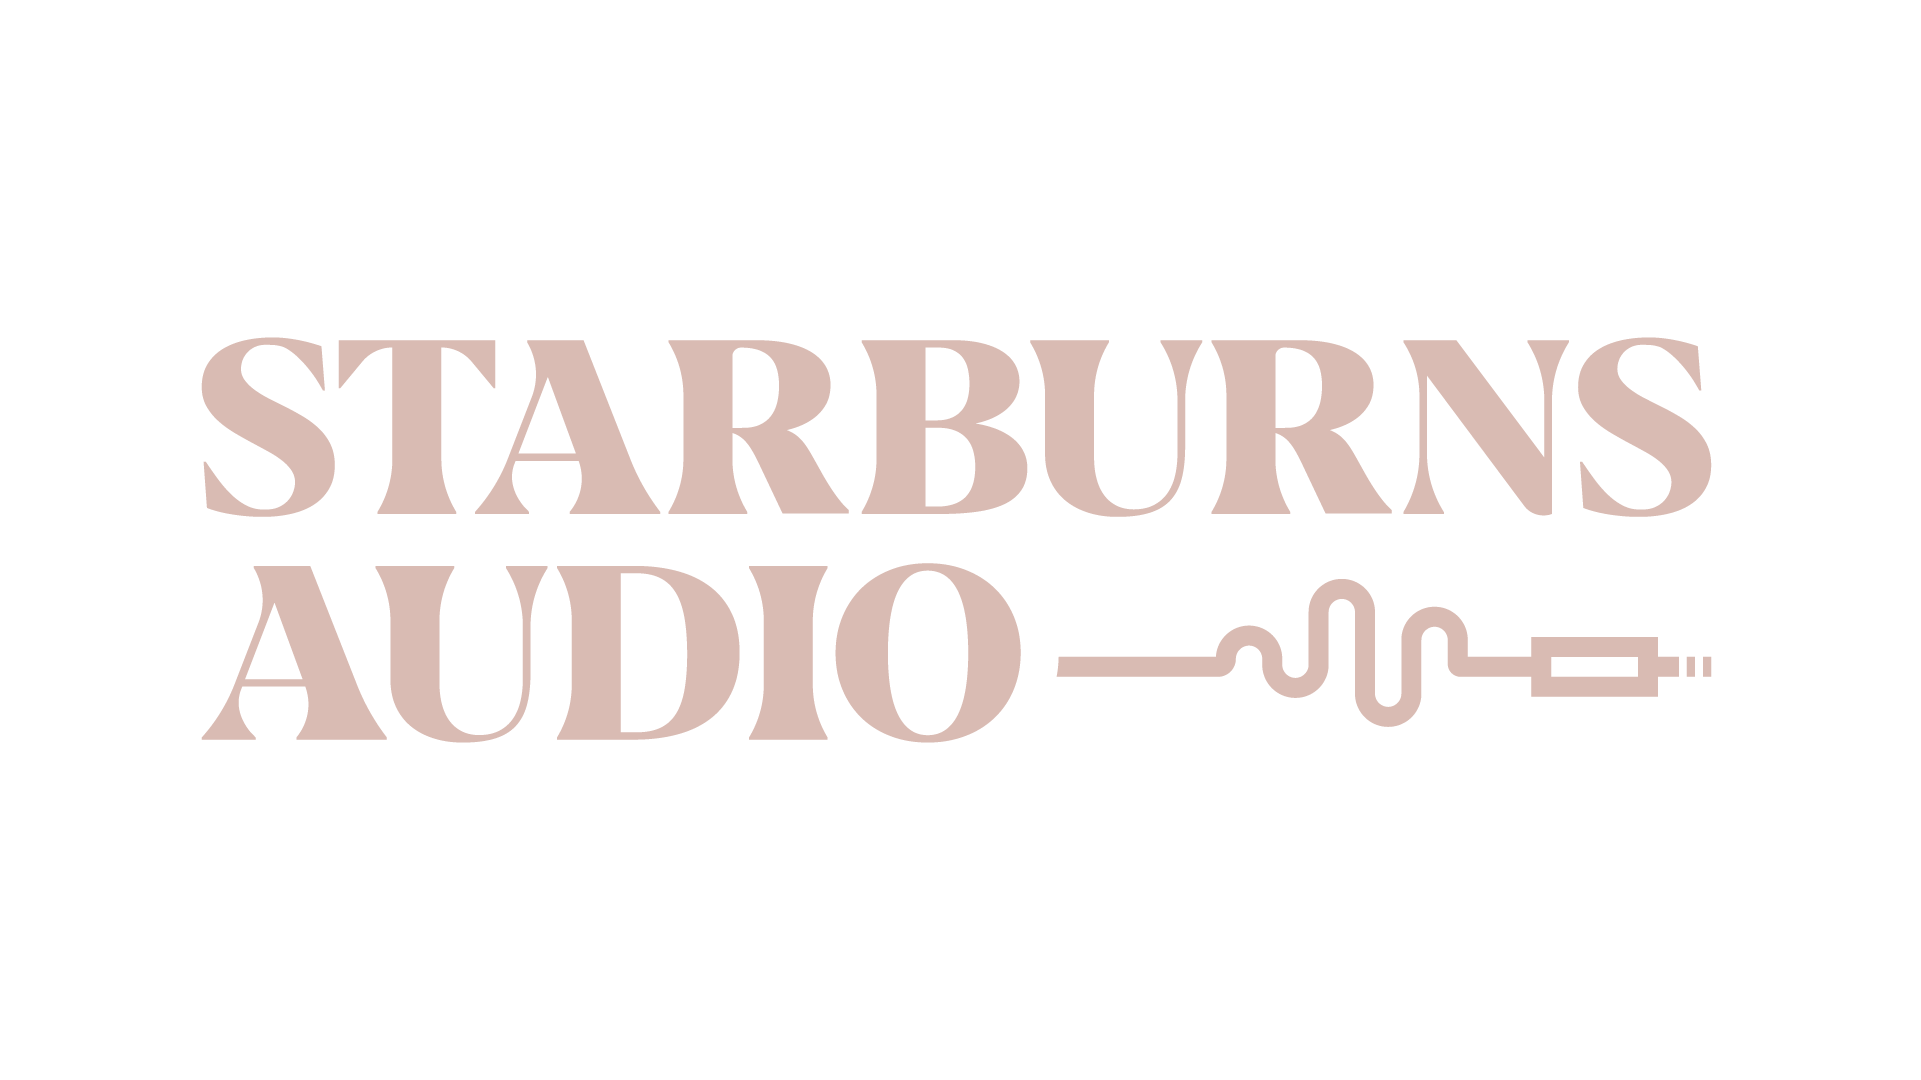 Starburns Audio